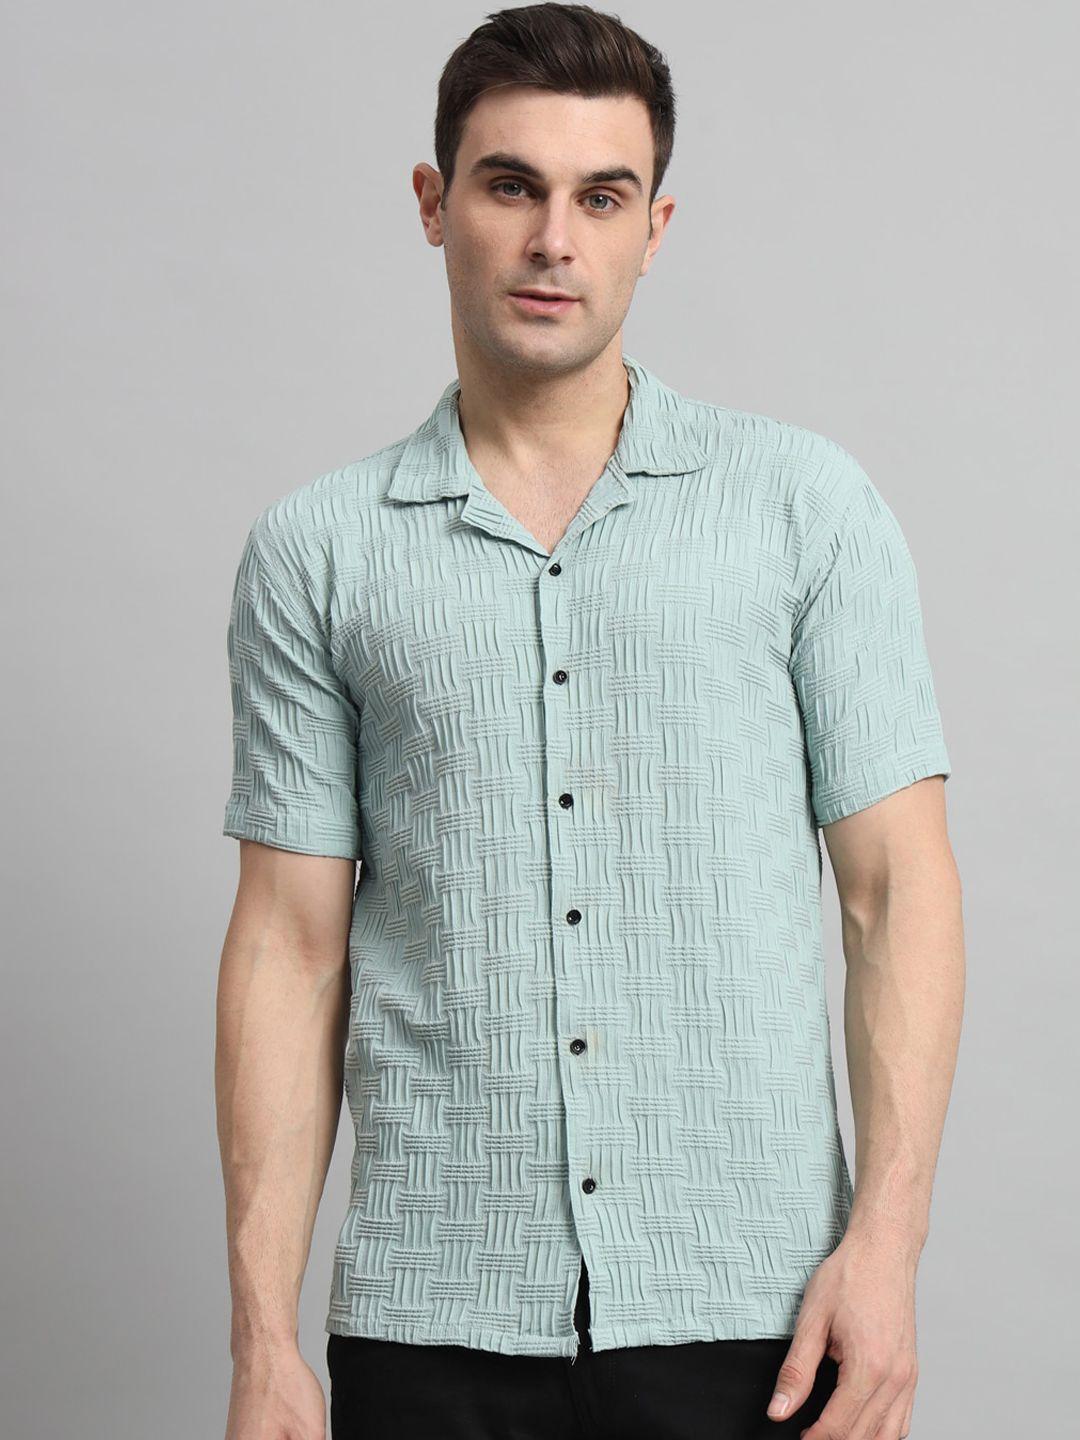 wuxi-men-classic-opaque-striped-casual-shirt